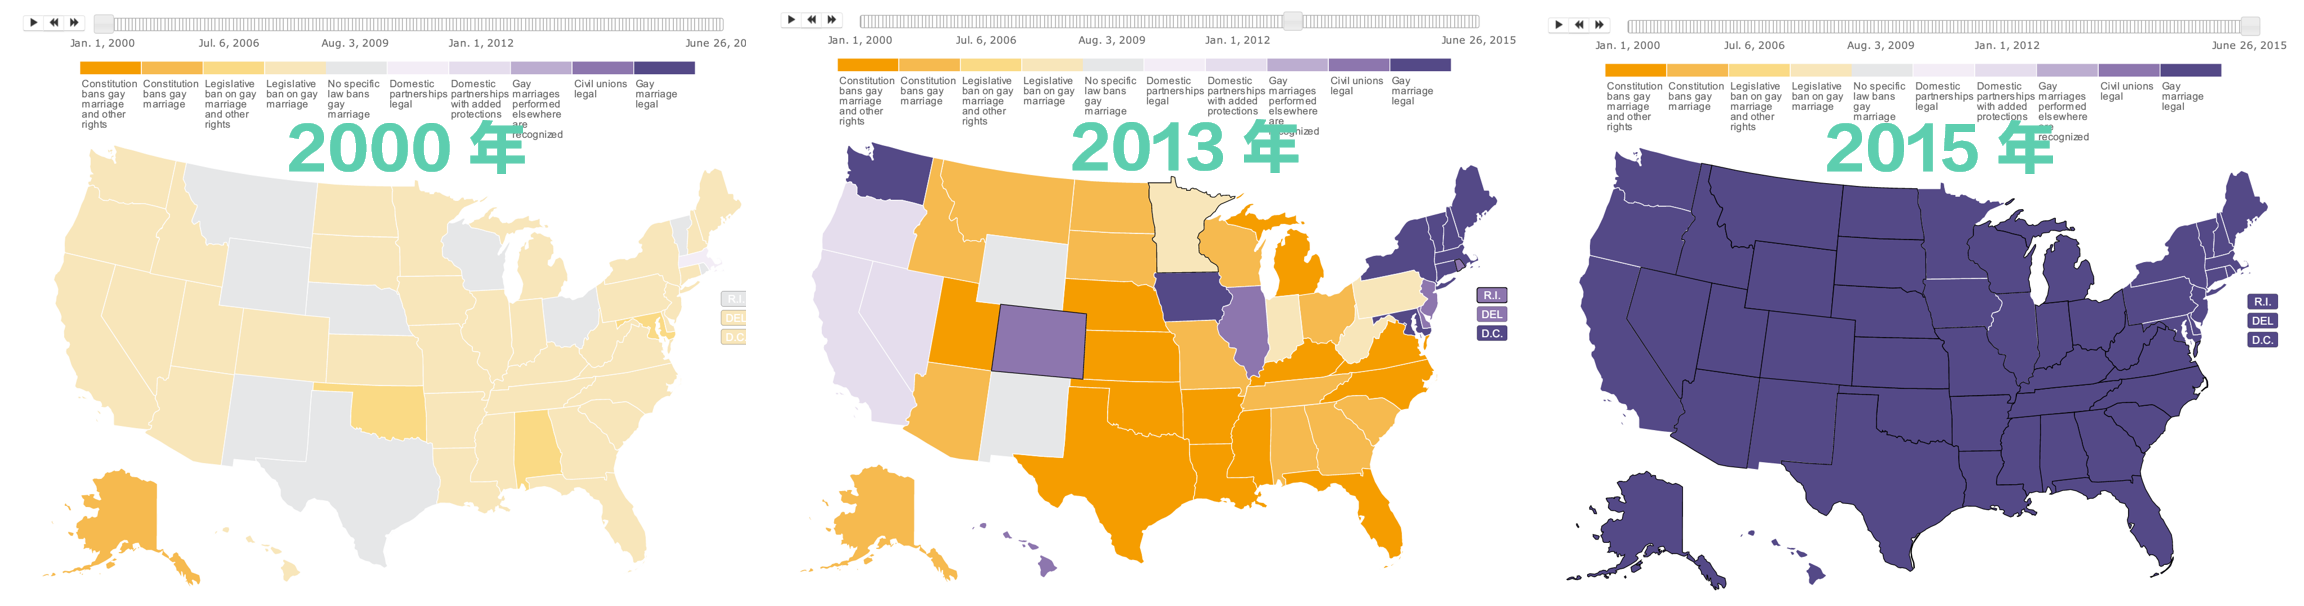 美國各州同性婚姻資訊視覺化